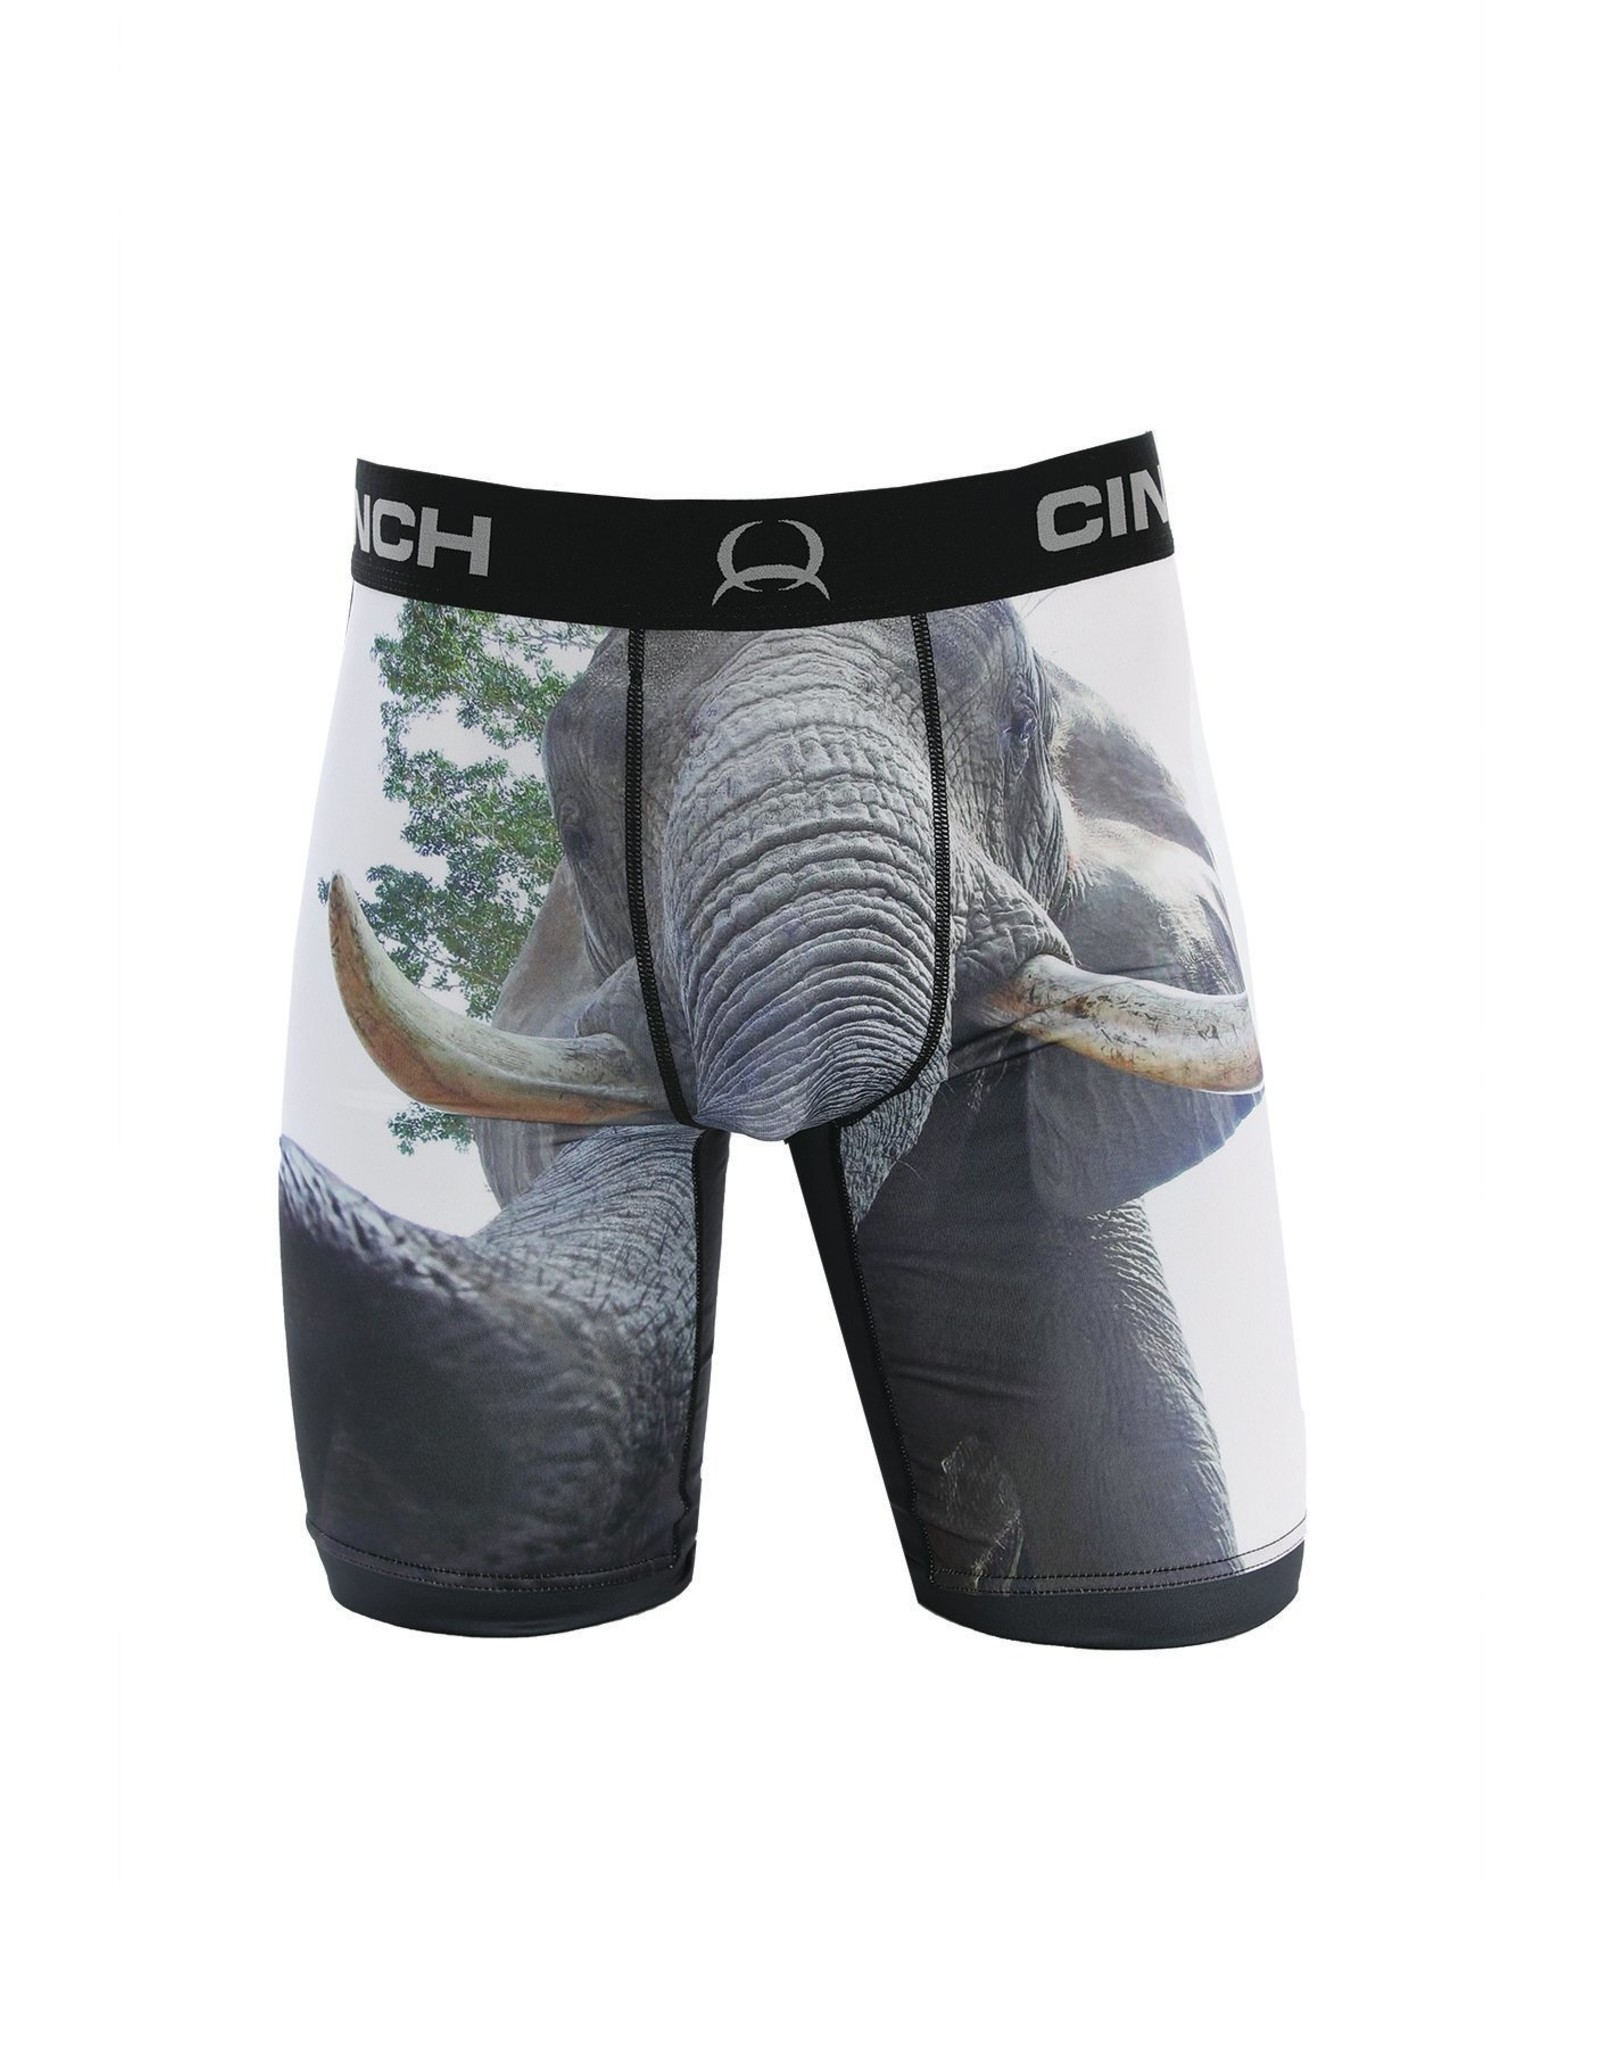 Cinch Men's Elephant ArenaFlex MXY6010009MUL Boxer Briefs